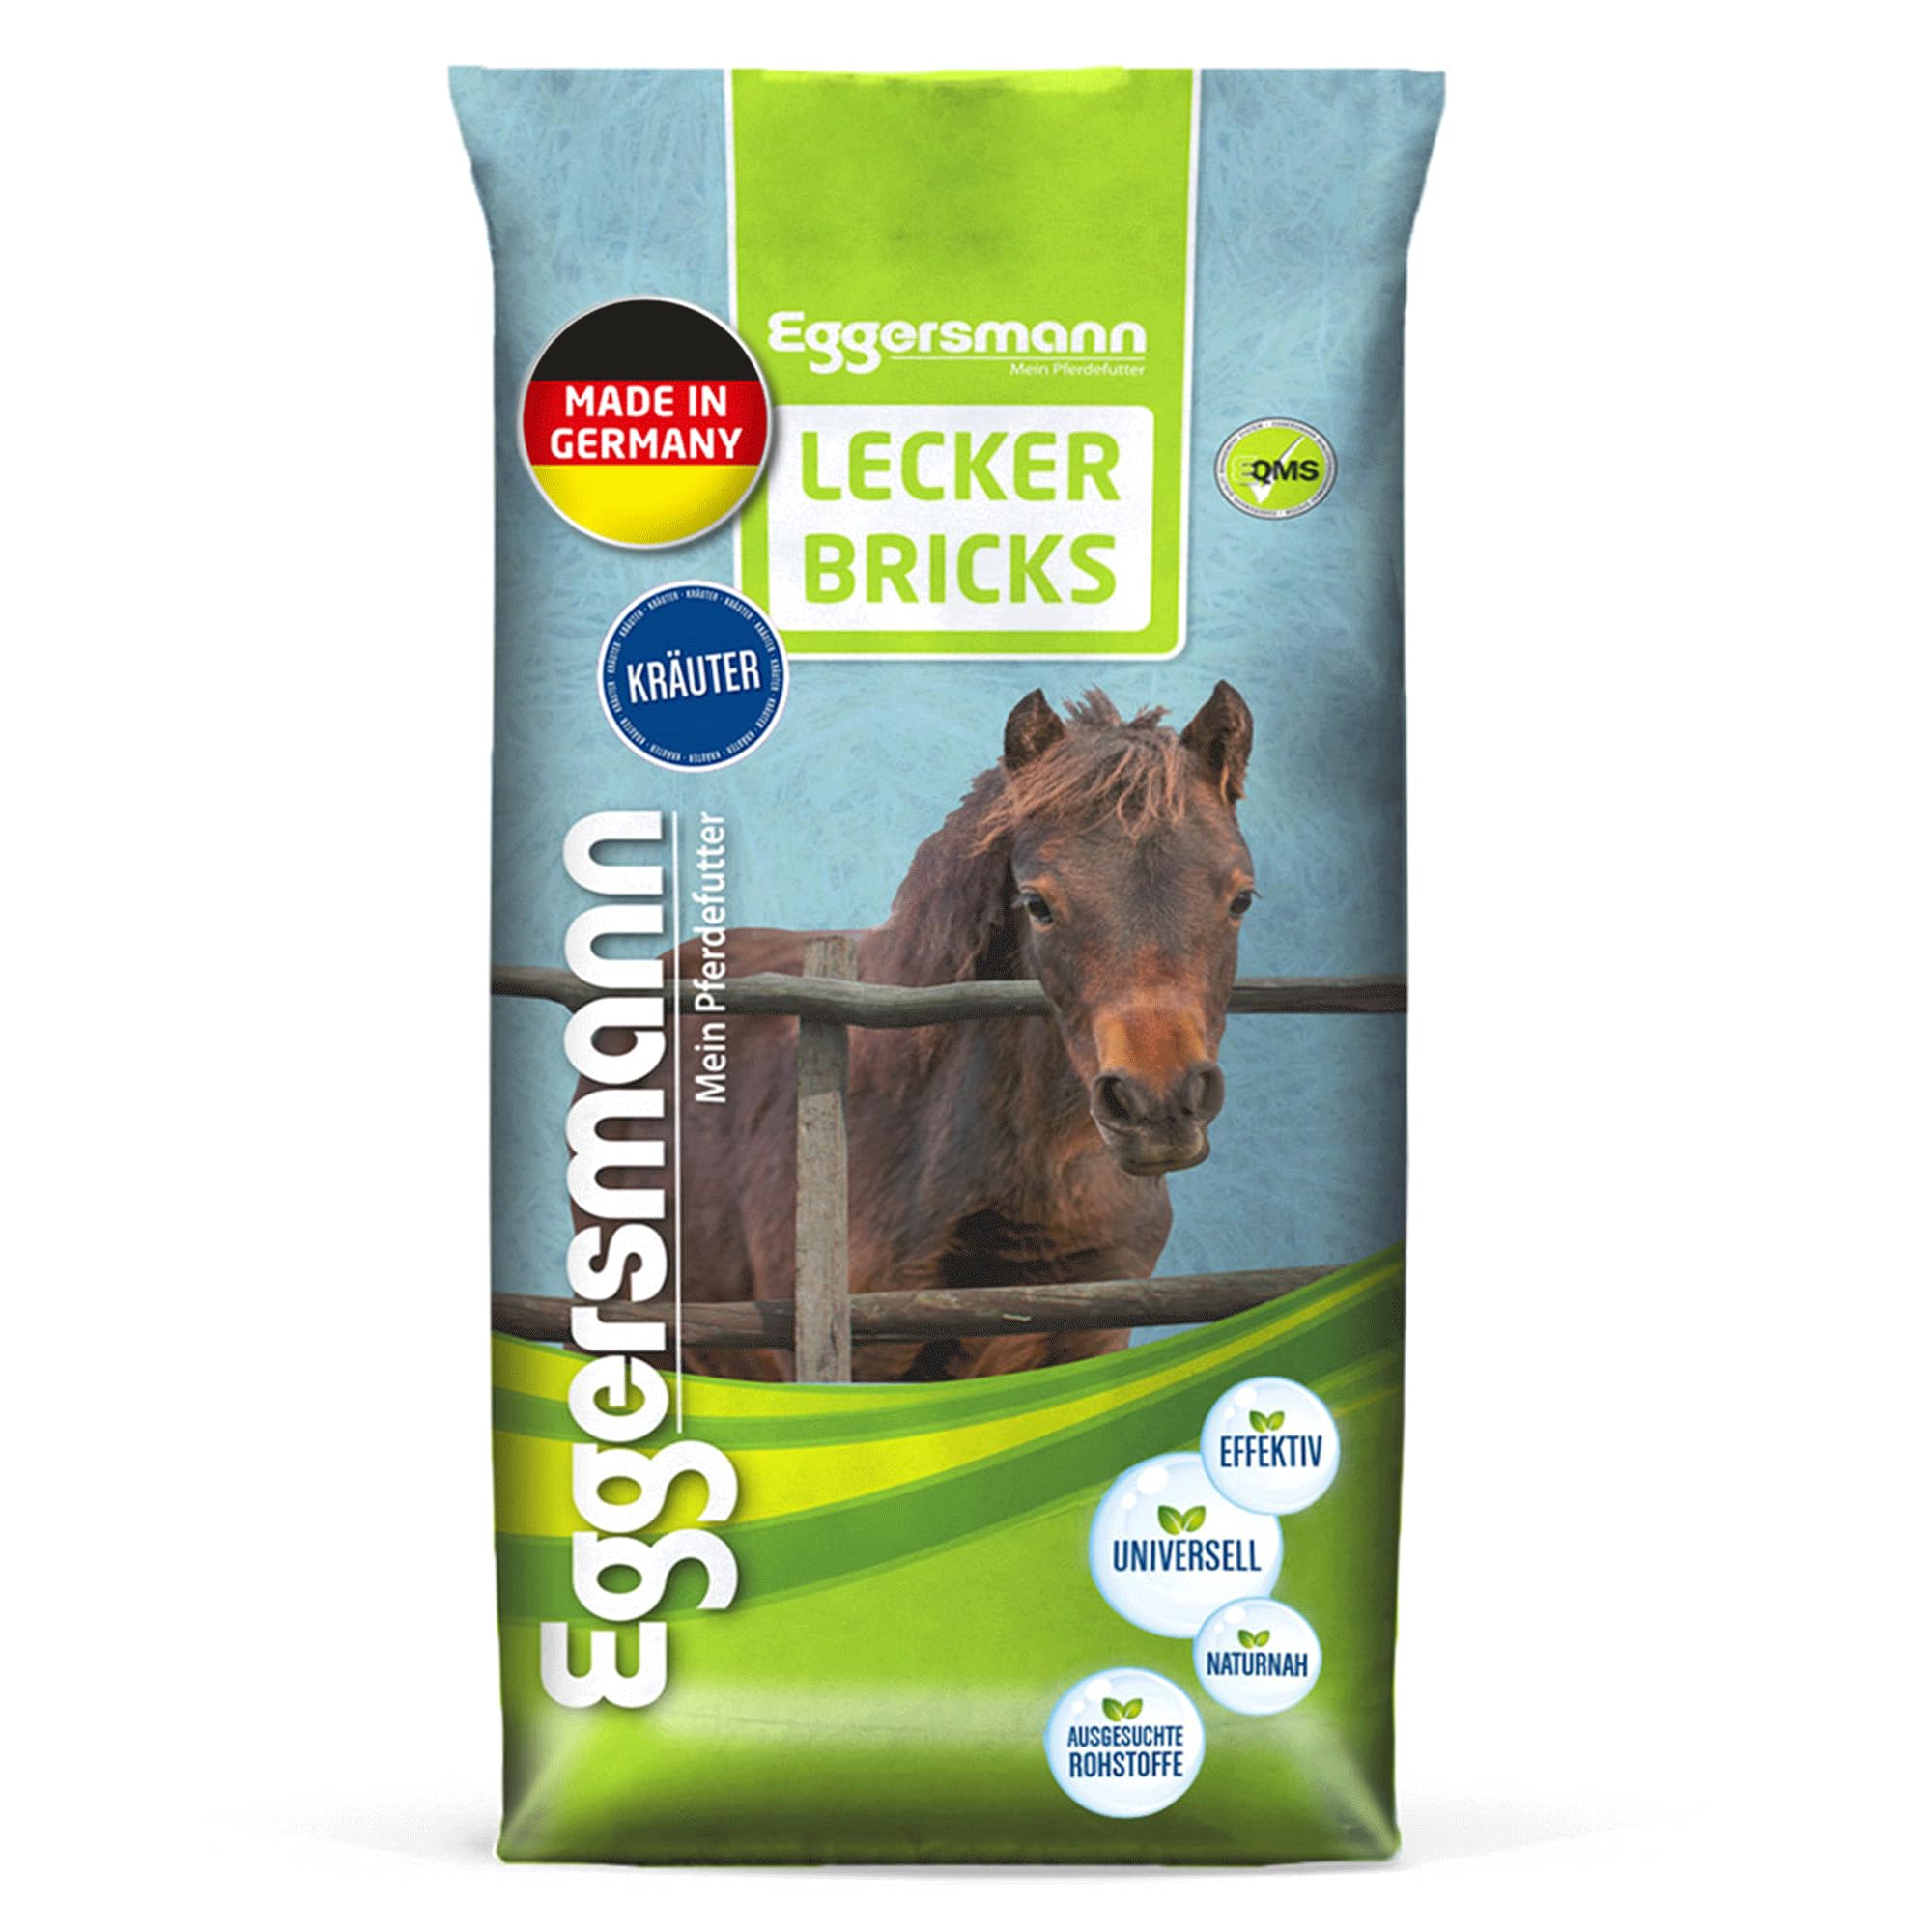 Eggersmann Mein Pferdefutter - Lecker Bricks Kräuter 25 kg - Leckerlies für Pferde und Ponies zur Belohnung